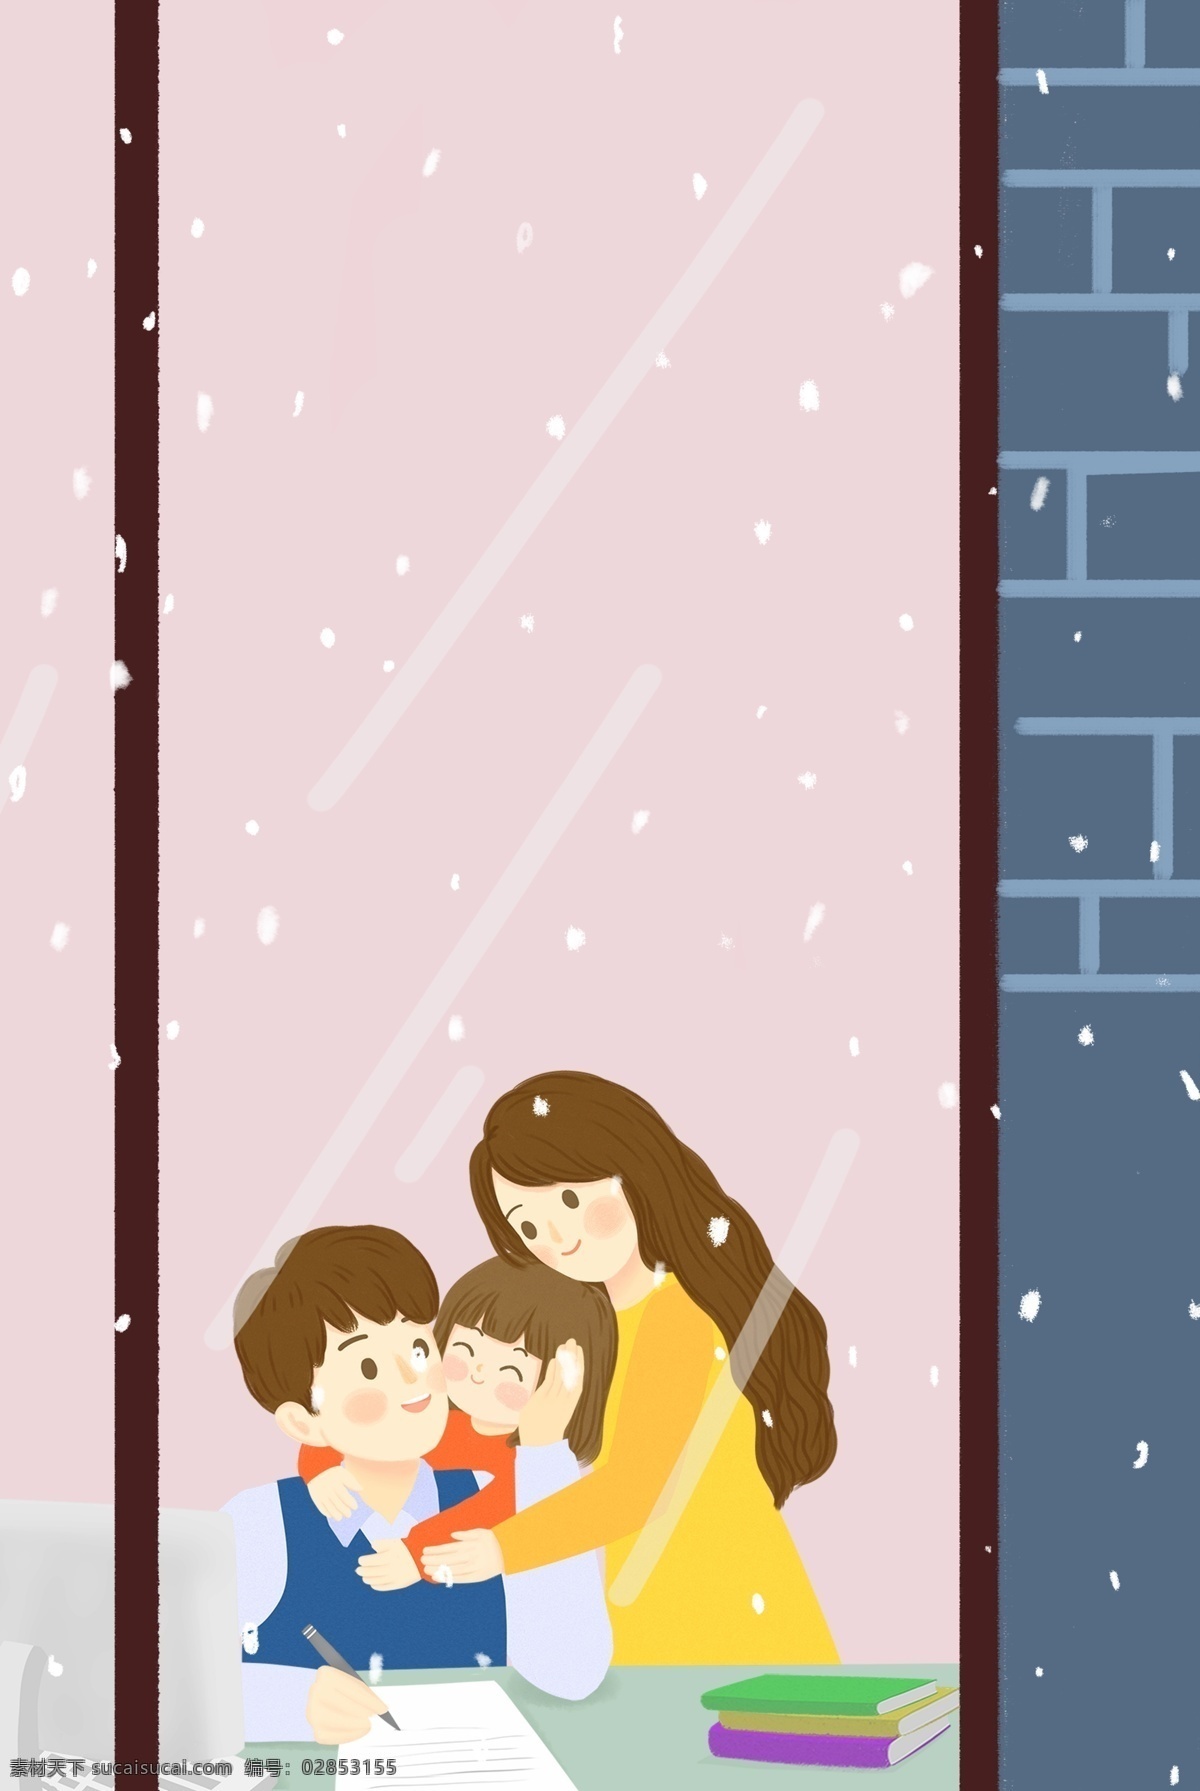 冬日 温暖 依偎 一家人 窗前 家居 海报 冬天 室内 家人 亲情 人物 插画风 促销海报